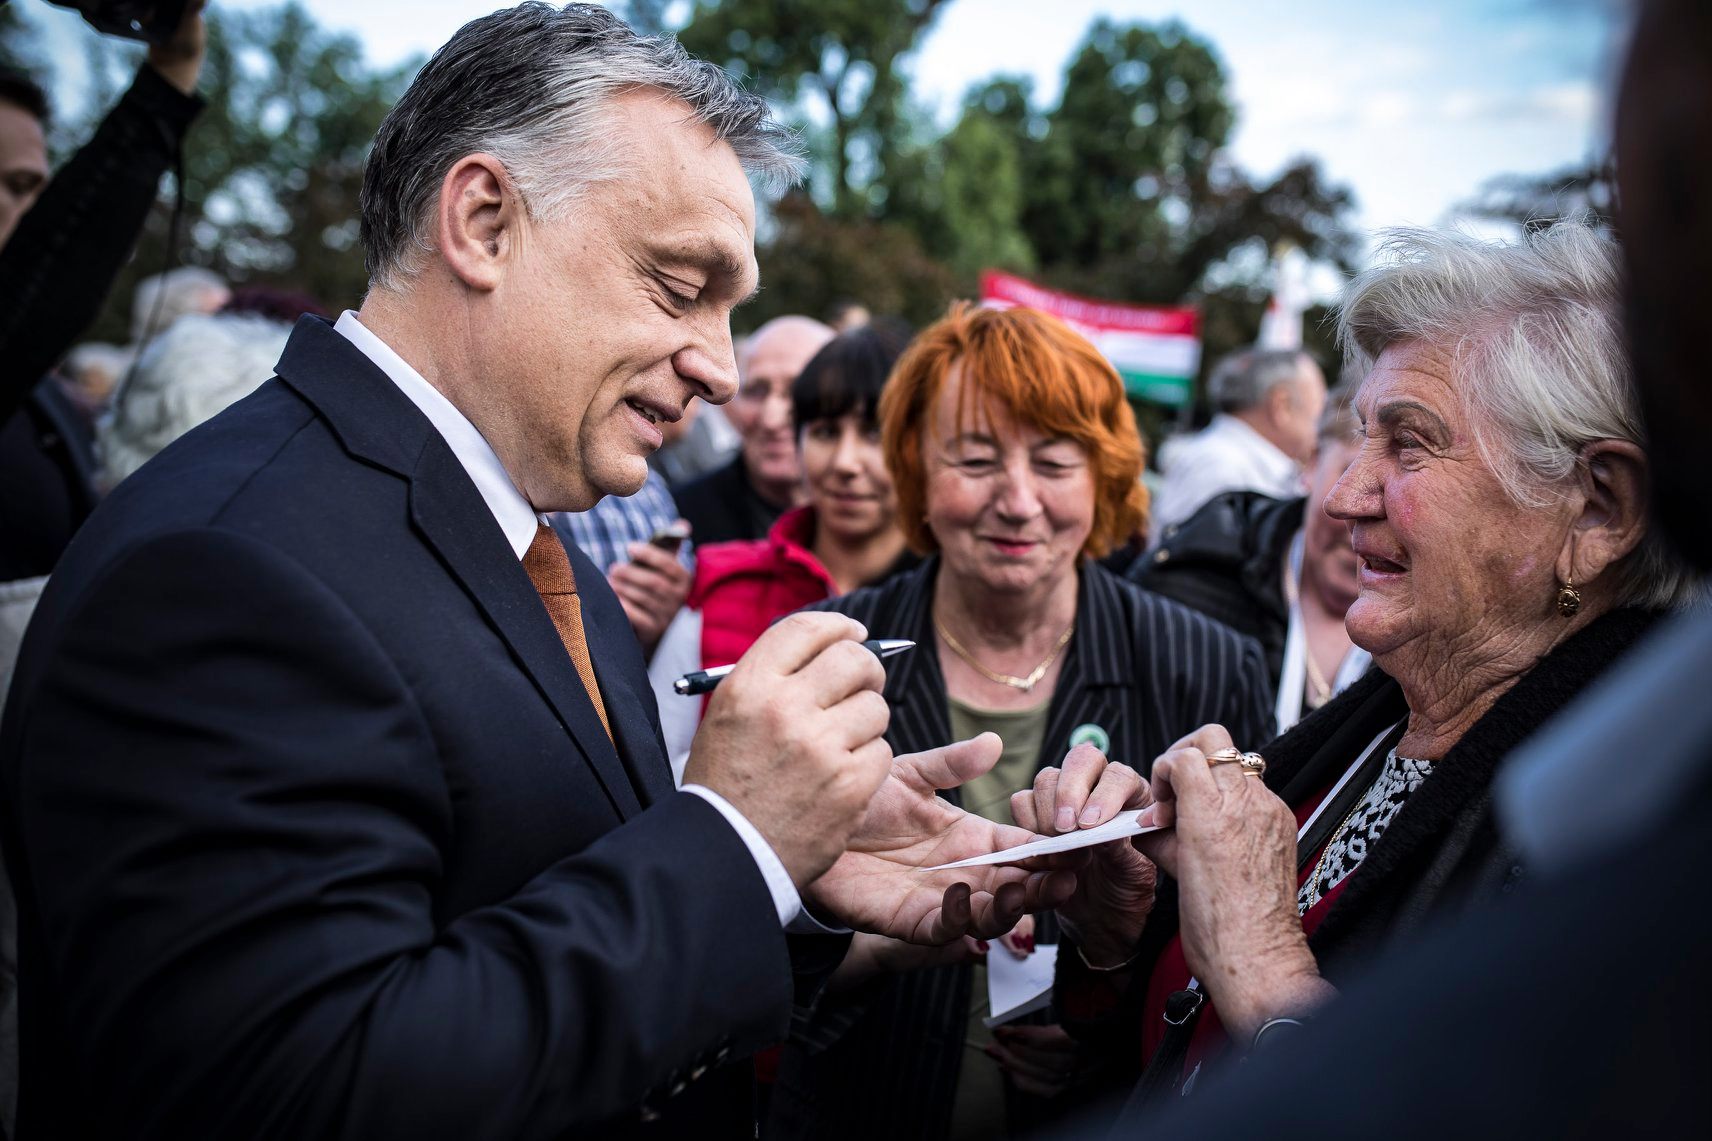 Bőkezű támogatást ígér a nyugdíjasoknak az Orbán-kormány a 2022-es országgyűlési választás előtt